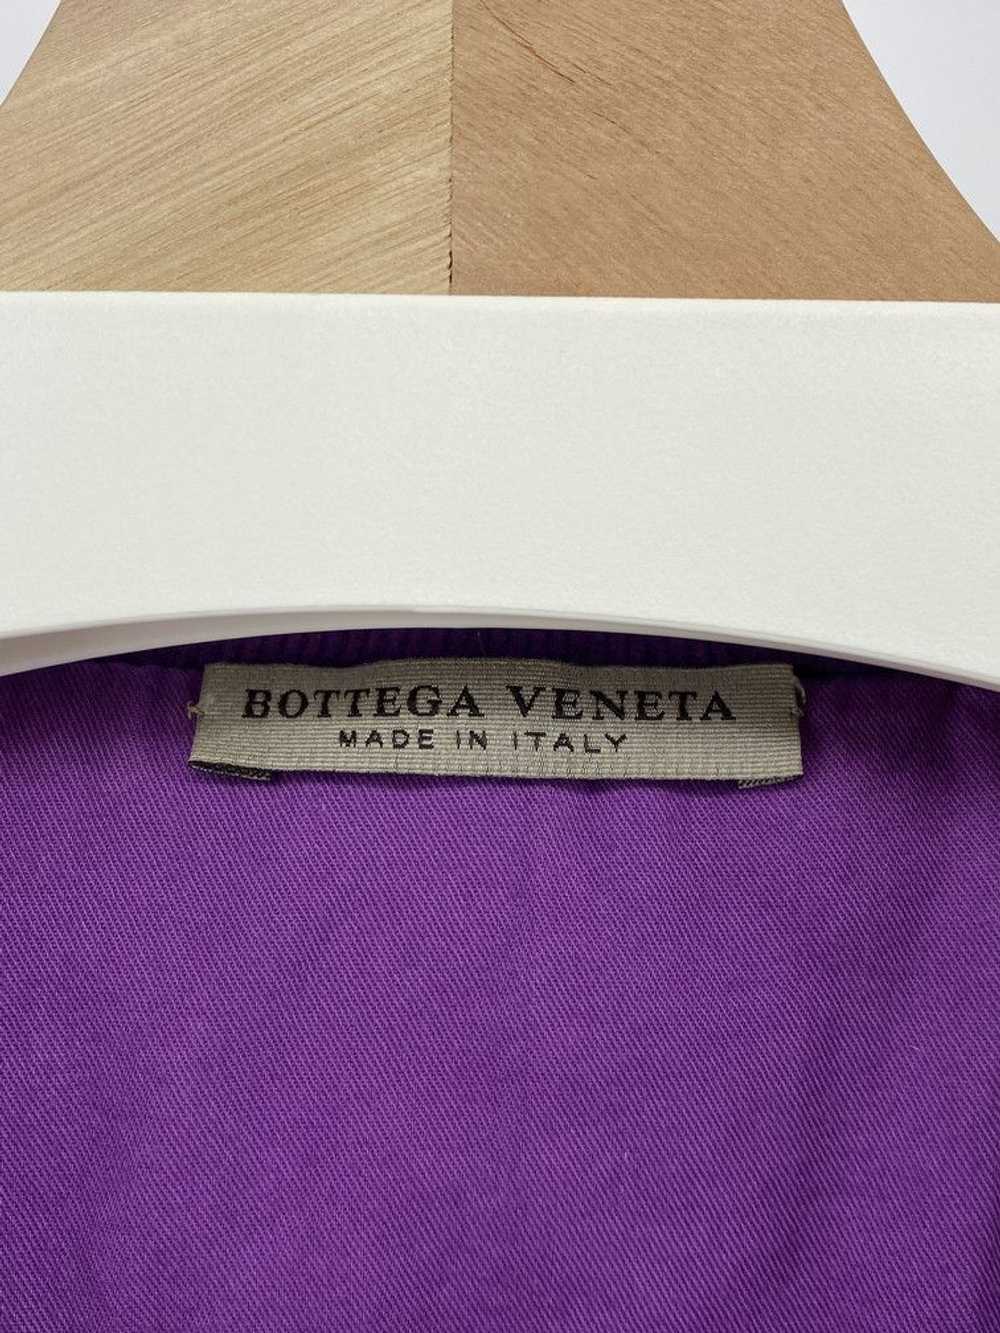 Bottega Veneta Cropped Corduroy Bomber - image 3